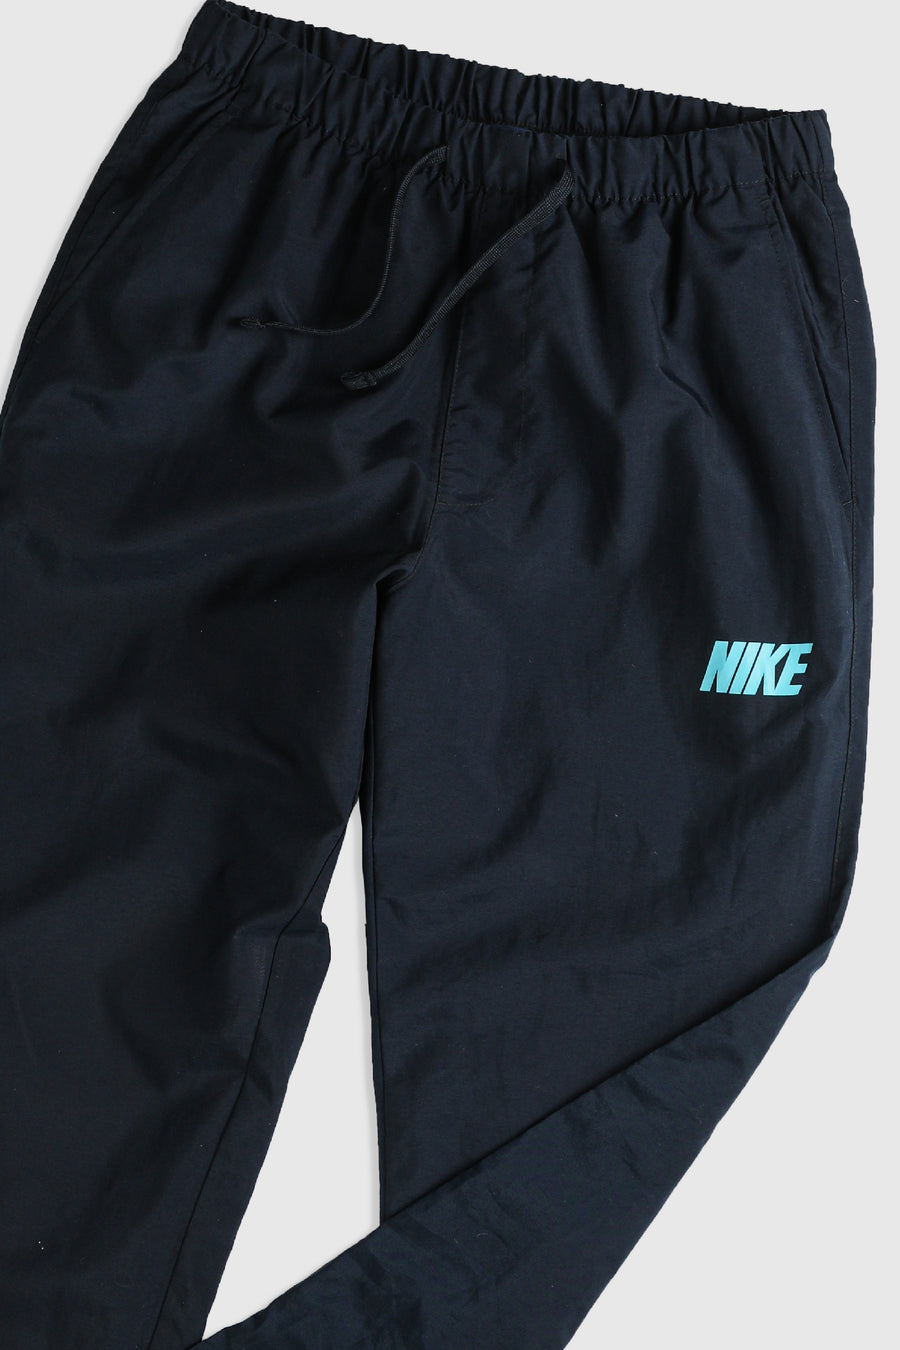 Vintage Nike Windbreaker Pants - M